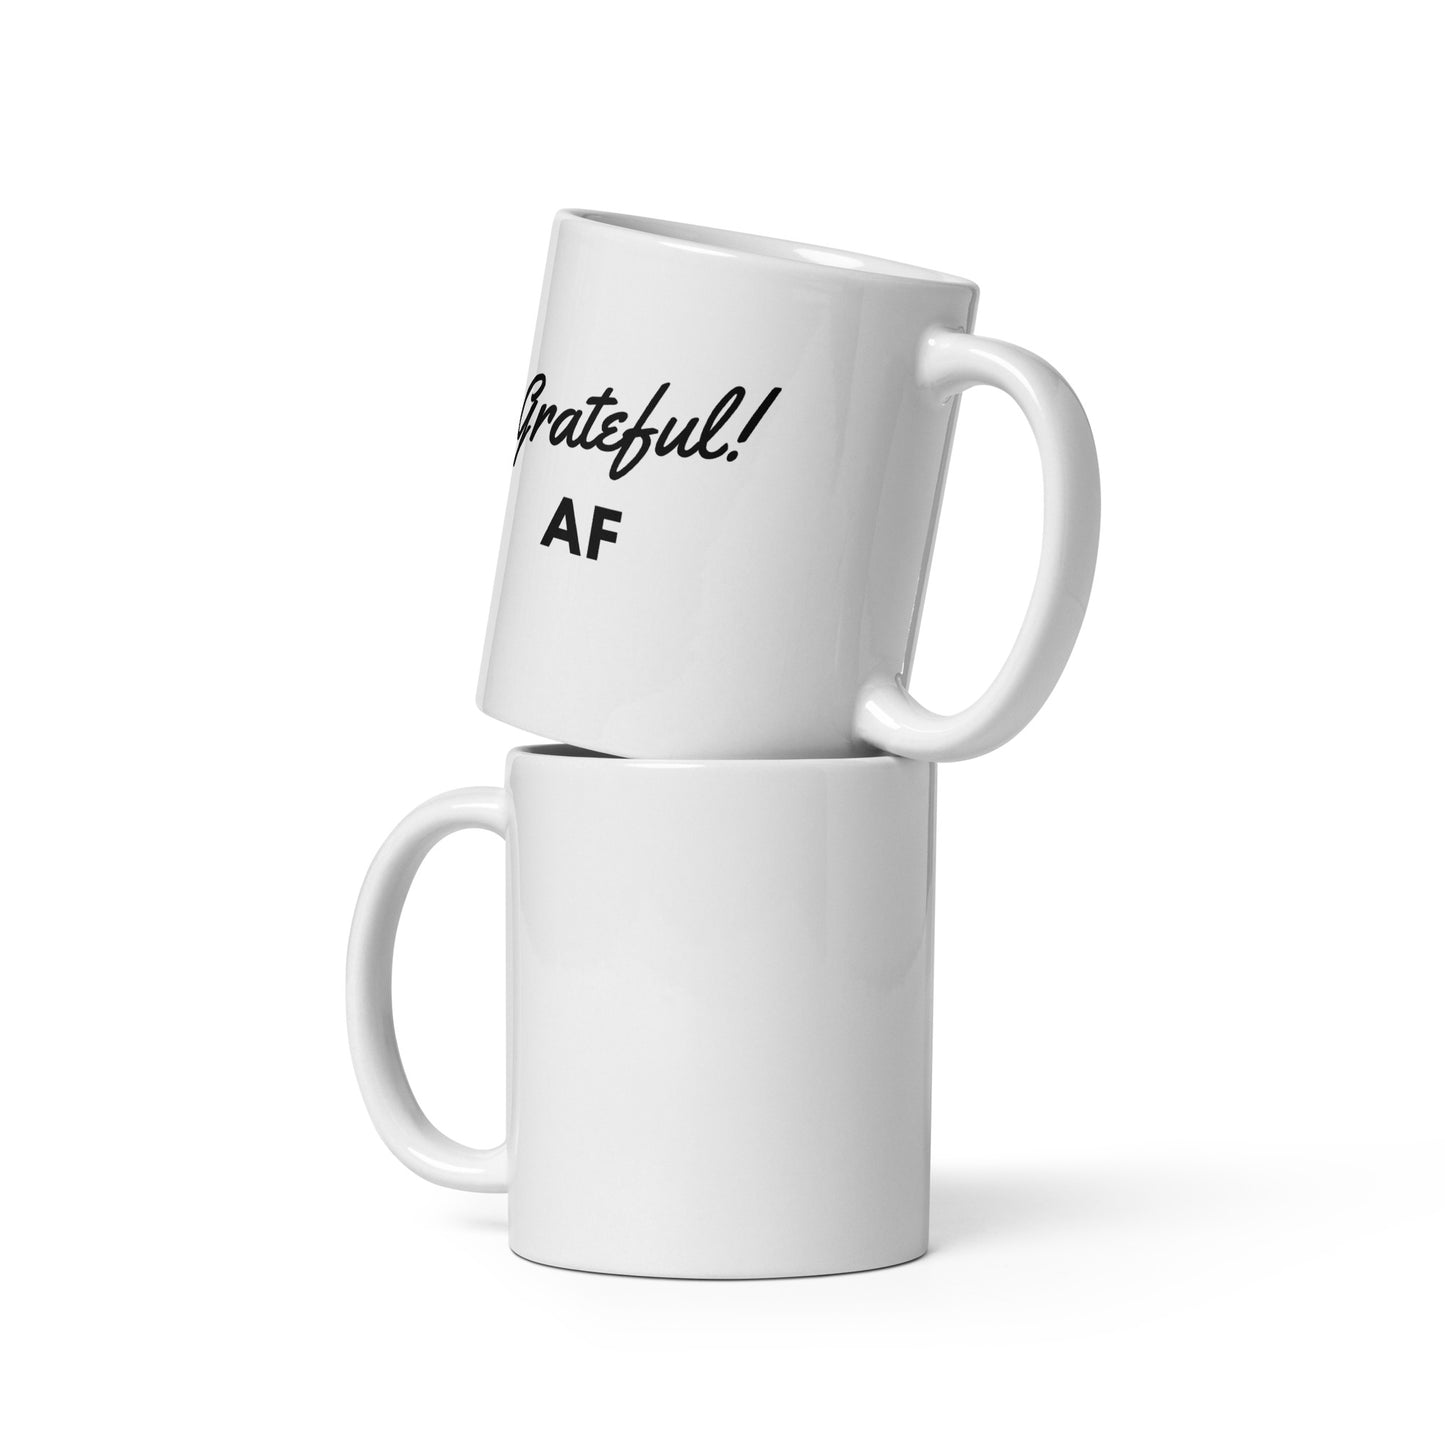 Grateful AF - White glossy mug